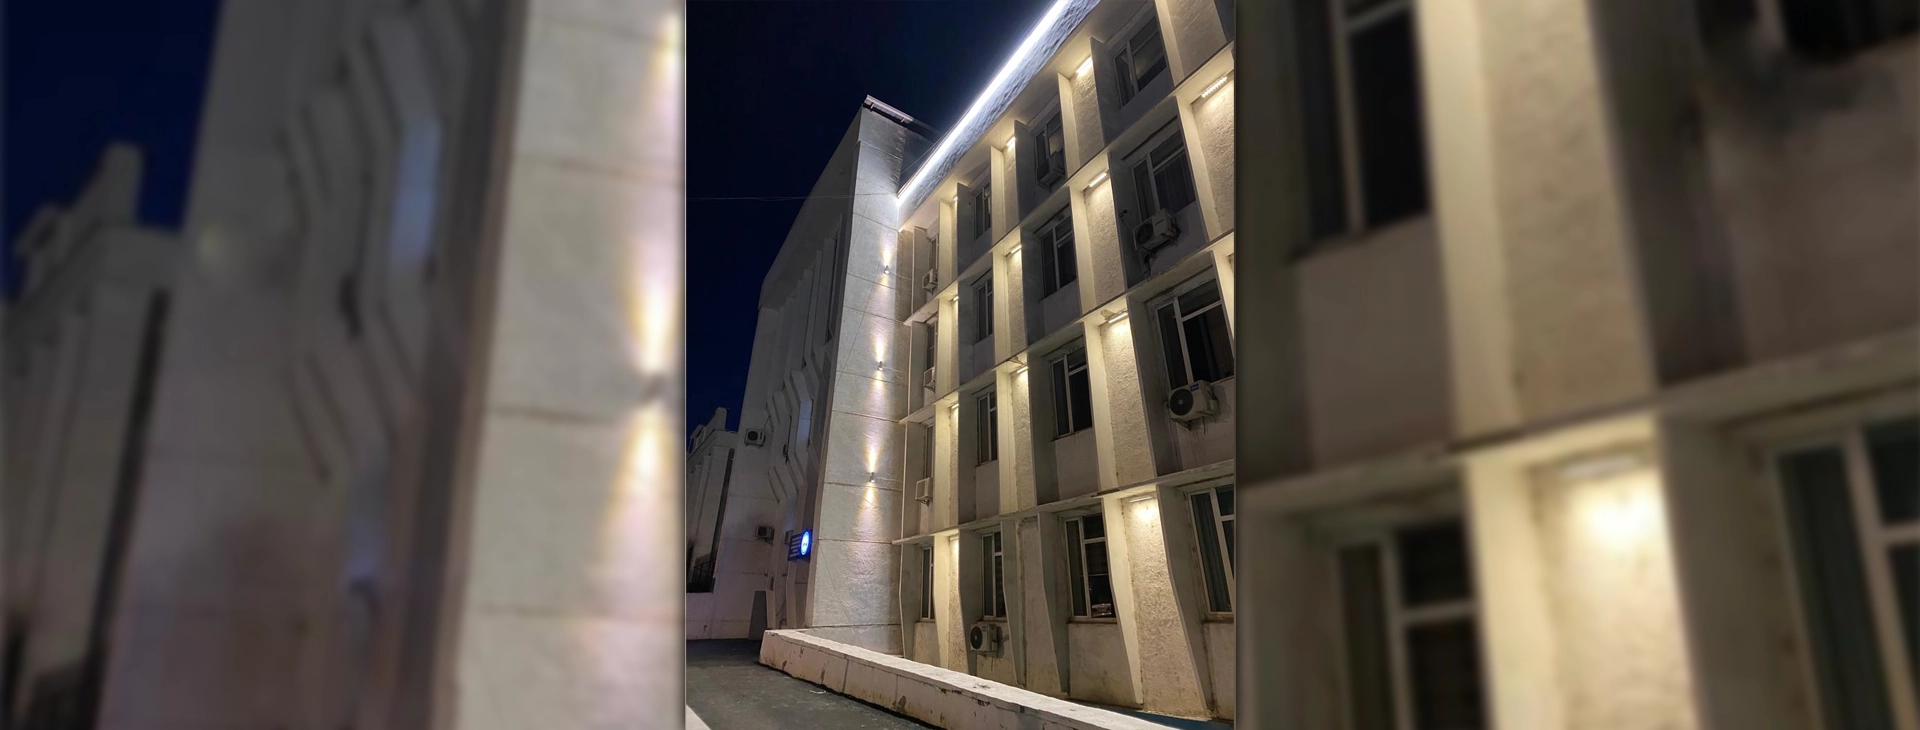 Поставка светильников для освещения здания мэрии г. Ош